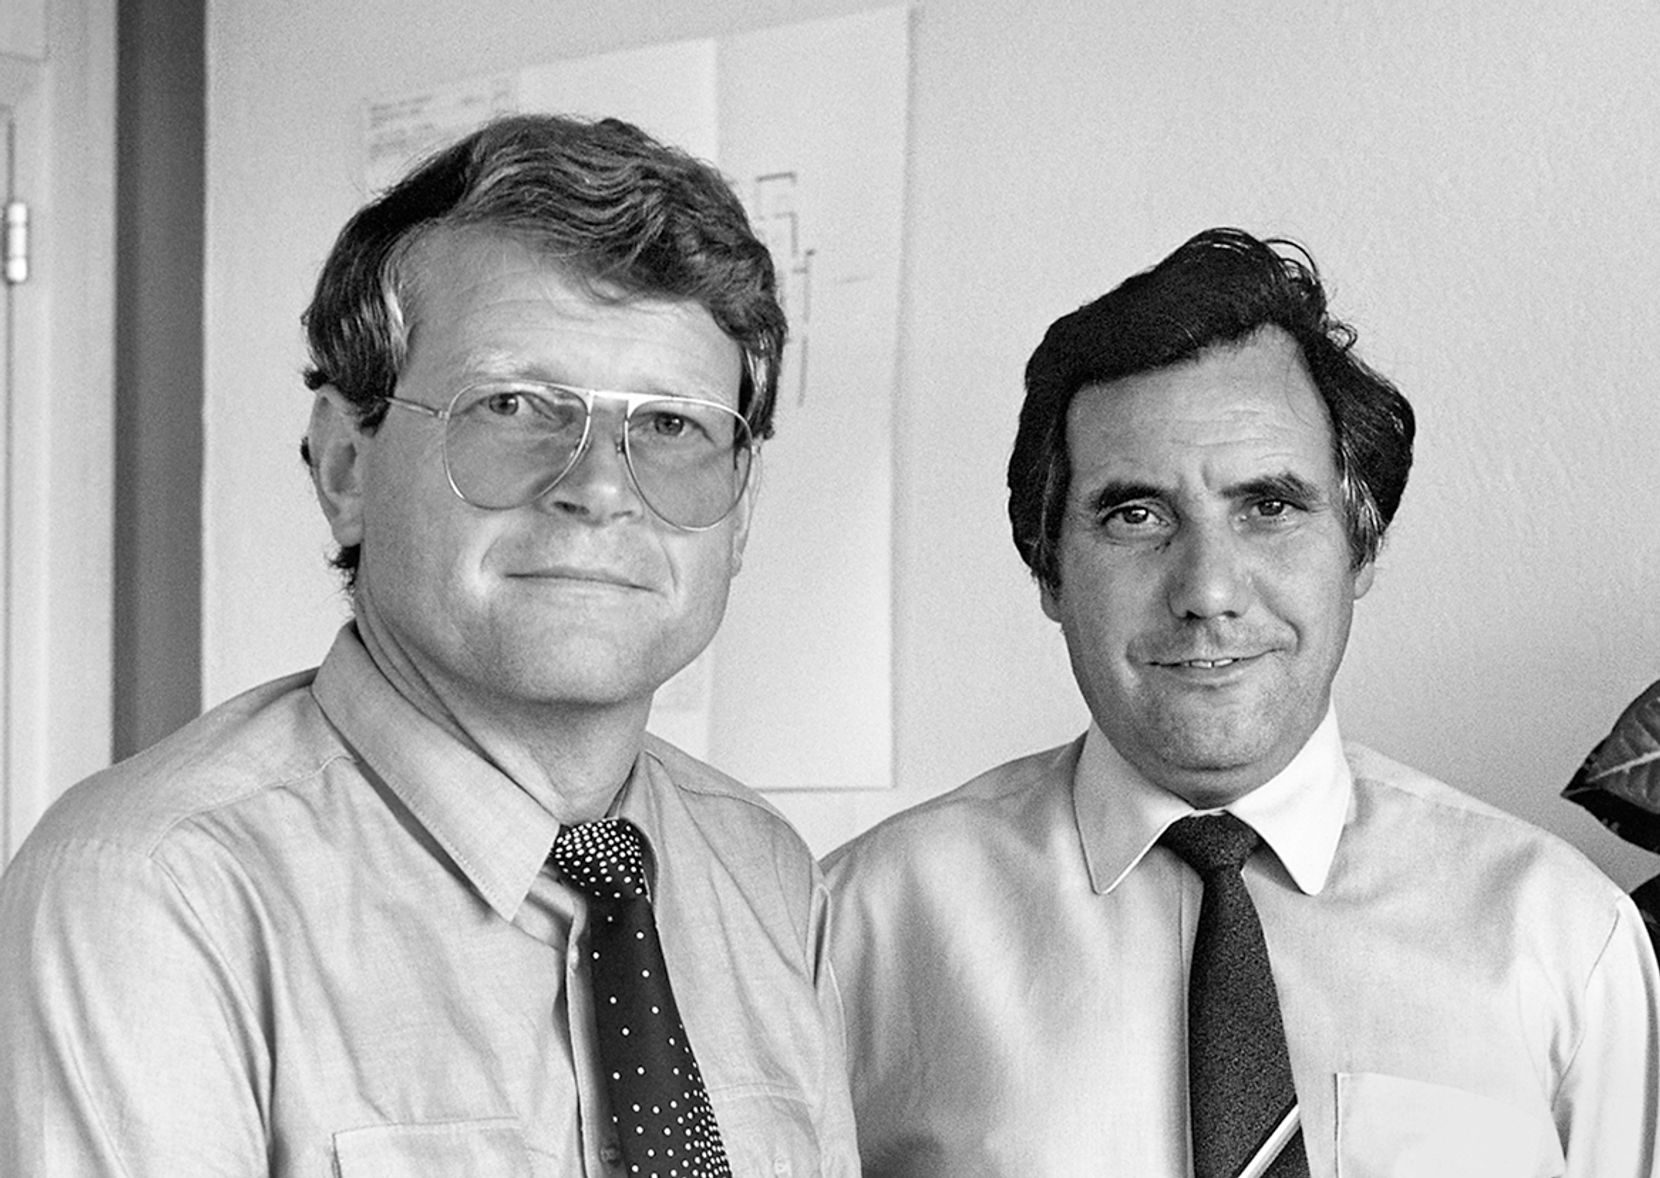 Schwarz-Weiss-Bild zweier Männer mit Hemd und Krawatte.